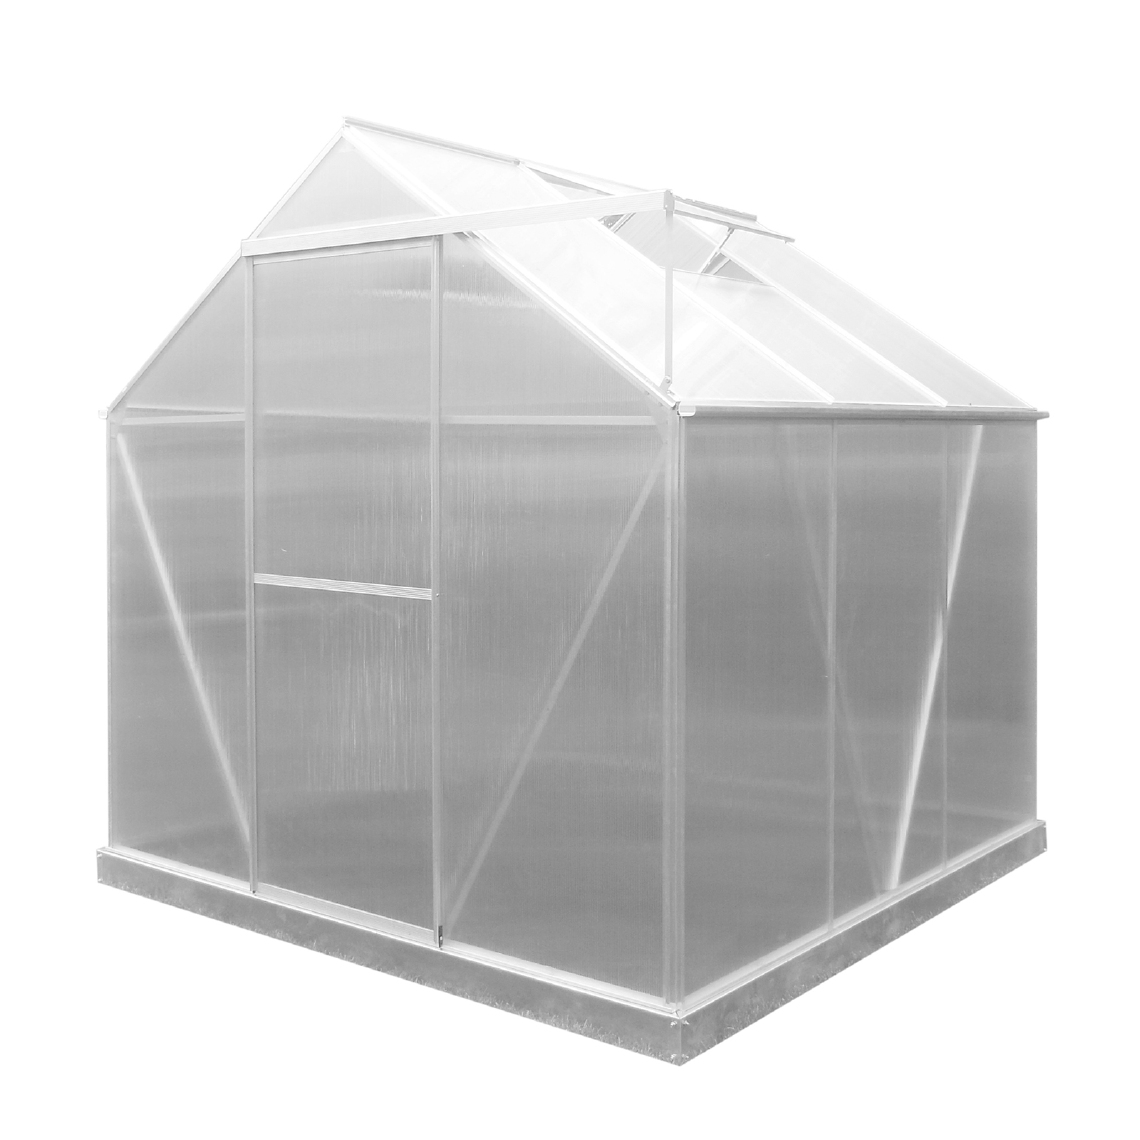 Gardiun - Serre de Jardin en Polycarbonate/Aluminium Gardiun Lunada - 3,63 m² 188x193x190 cm avec Base 3 Modules - Serres en plastique